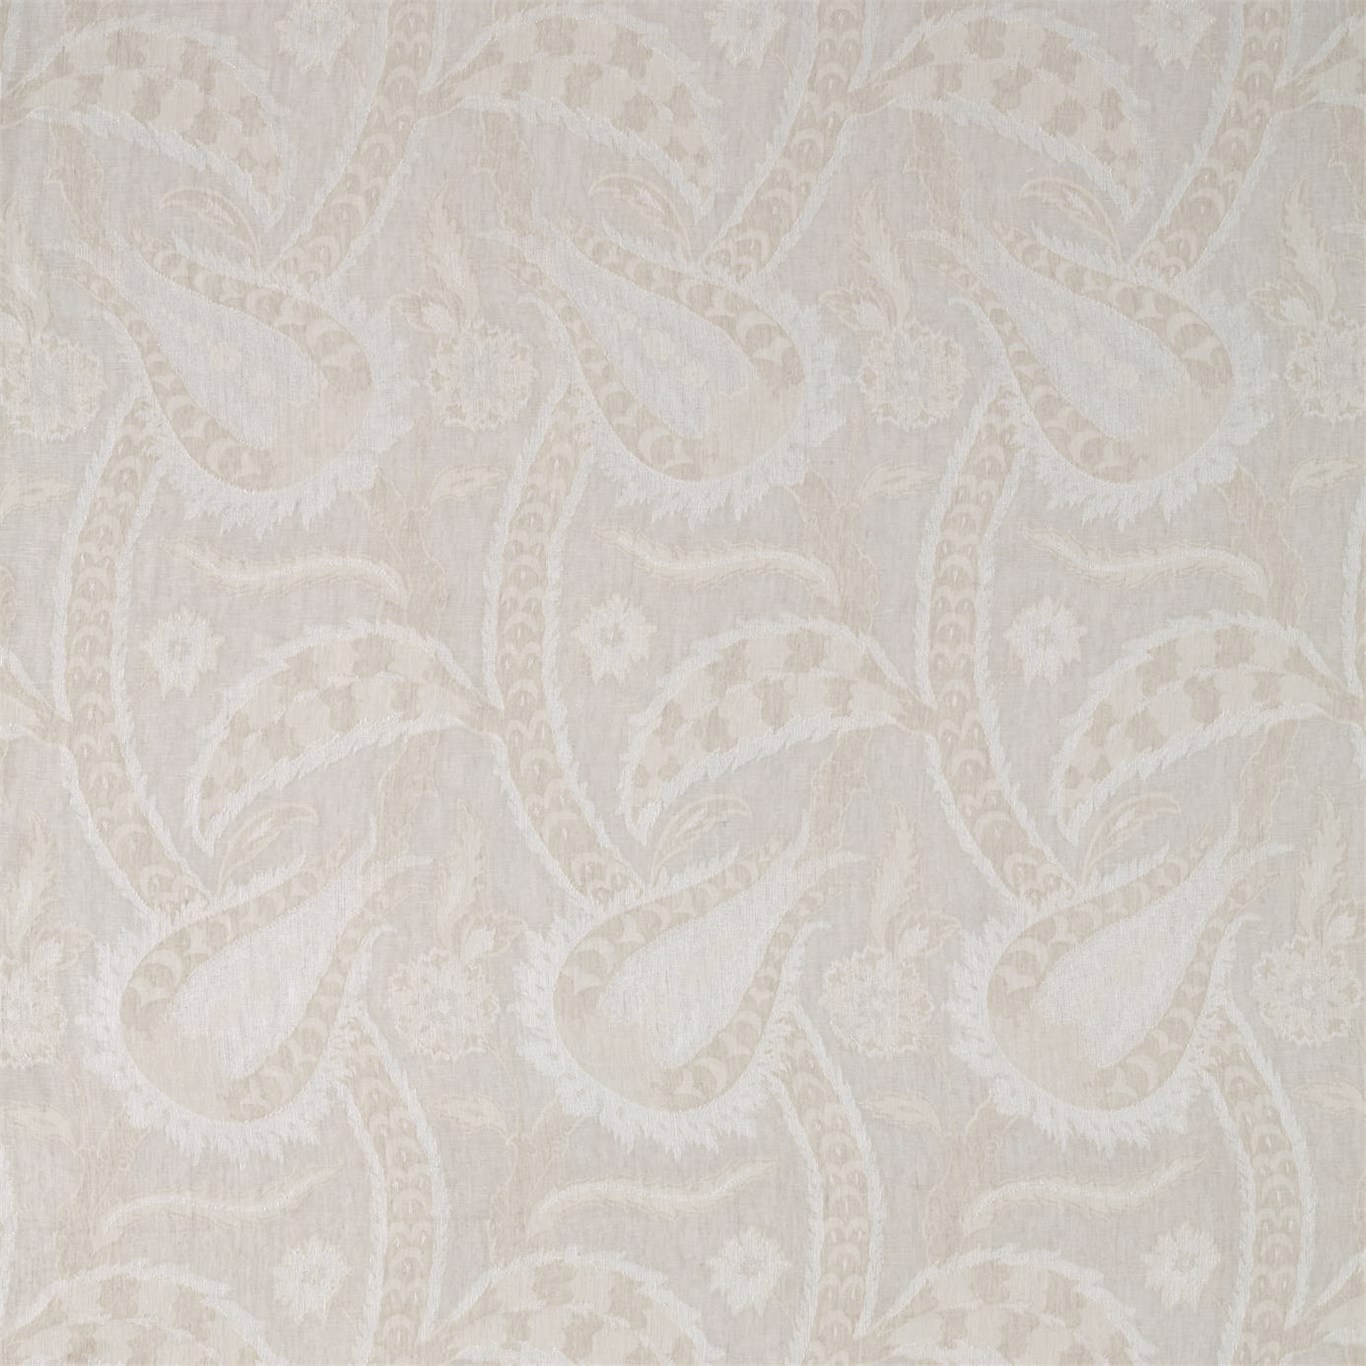 Oberon White Opal Fabric by ZOF